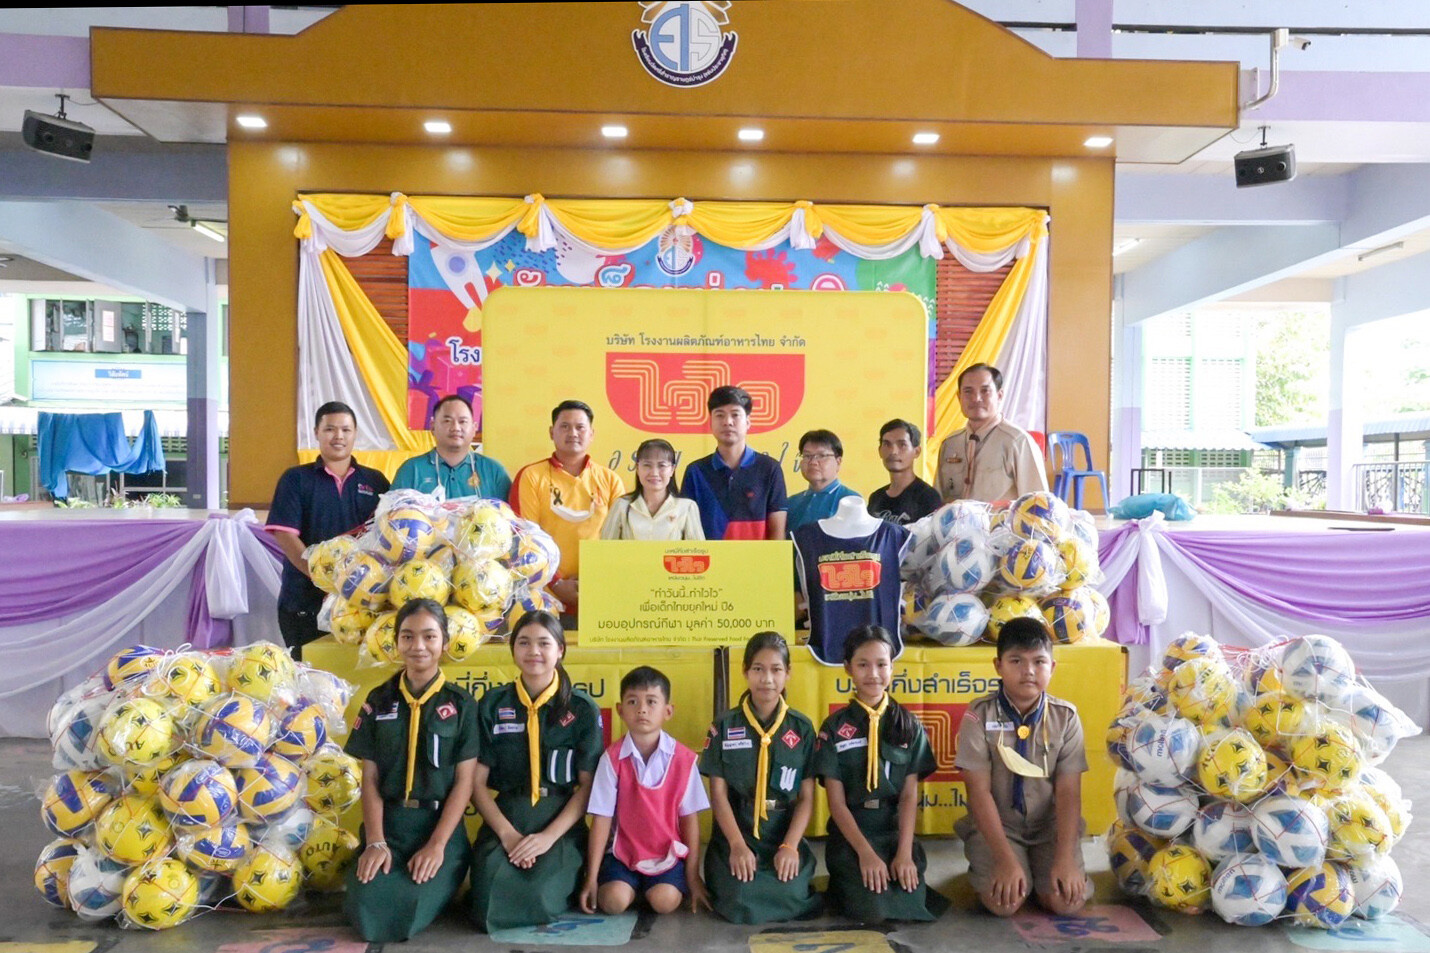 ไวไว จัดโครงการ "ทำวันนี้ทำไวไว เพื่อเด็กไทยยุคใหม่ ปี 6" บุกกลุ่มลูกค้าวัยใส พิชิตใจวัยรุ่นฟันน้ำนม